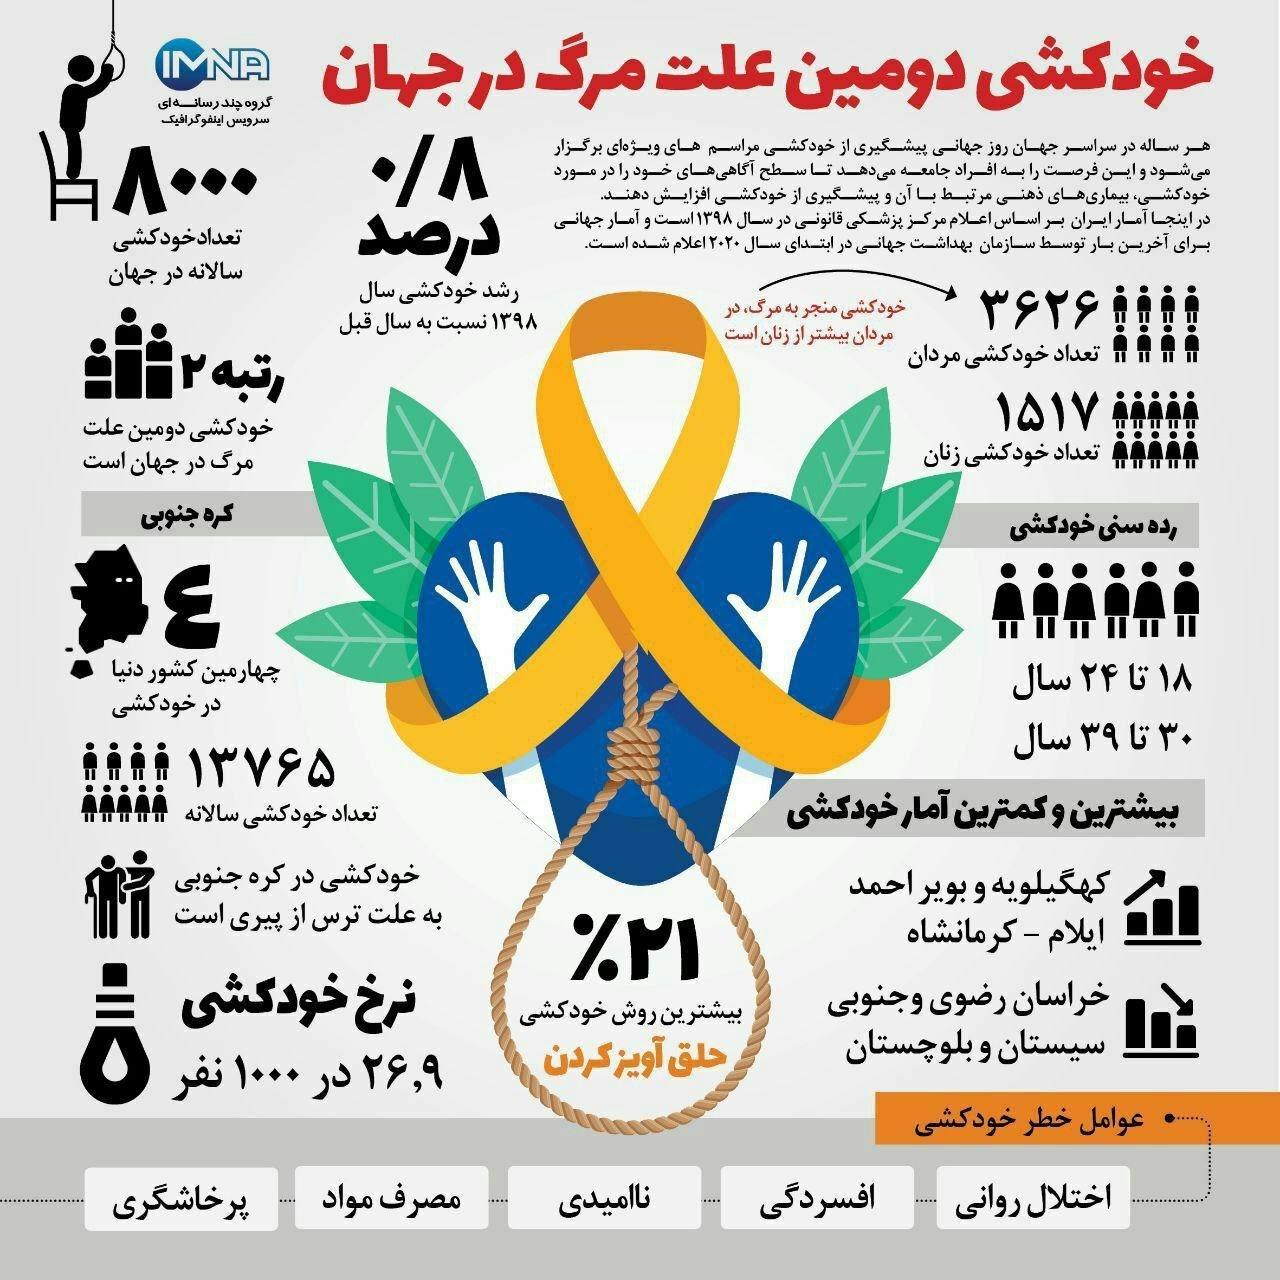 اینفوگرافی: نسبت آمار خودکشی مردان به زنان در ایران